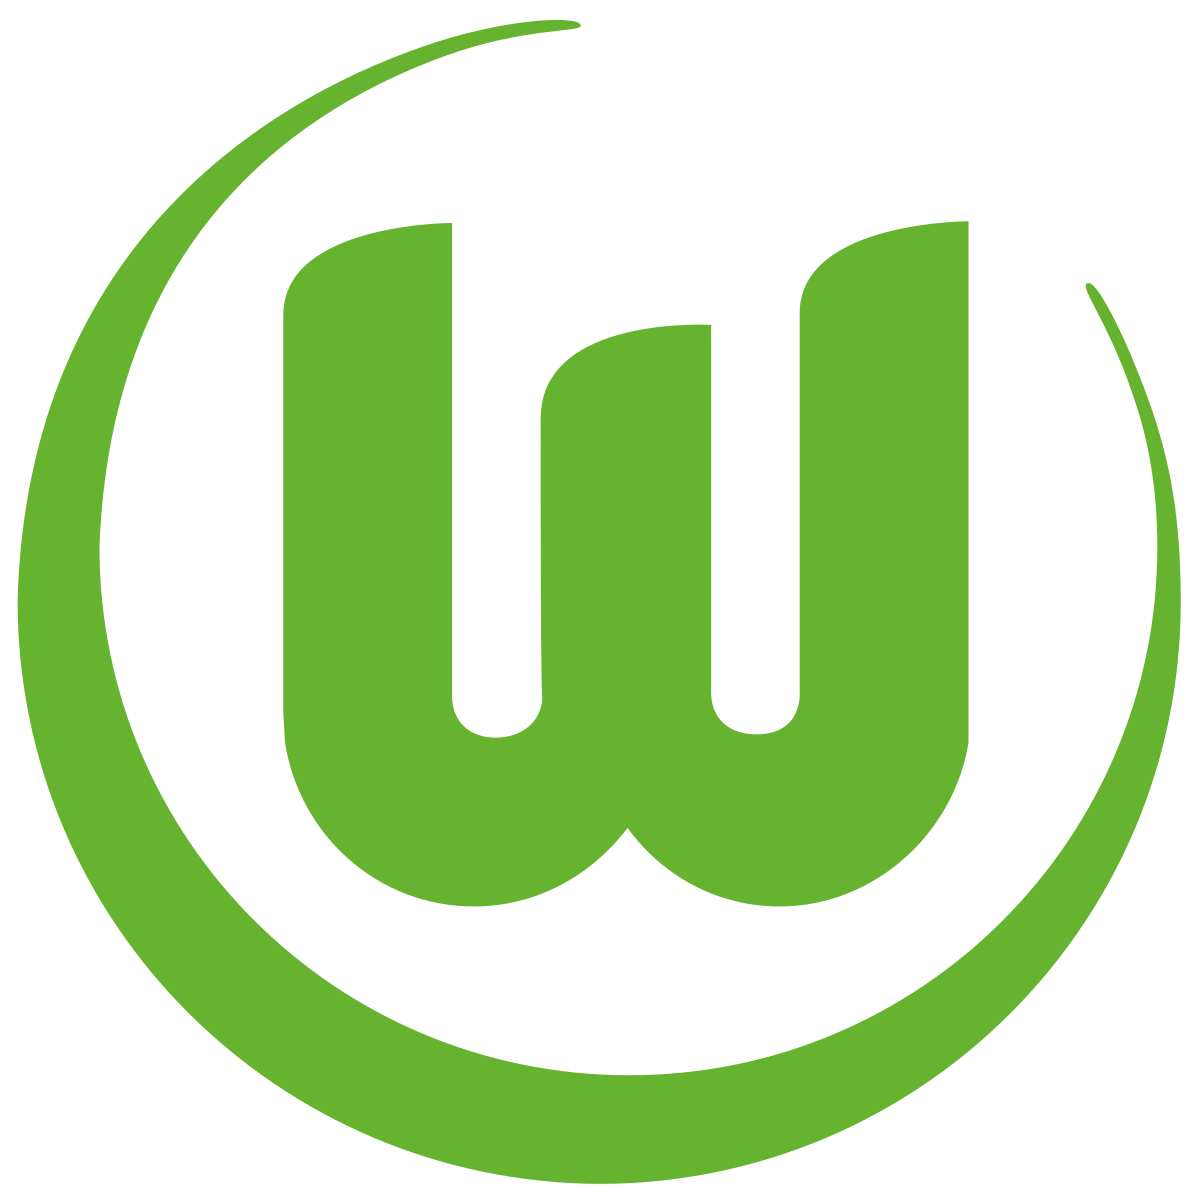 Vfl Wolsburg